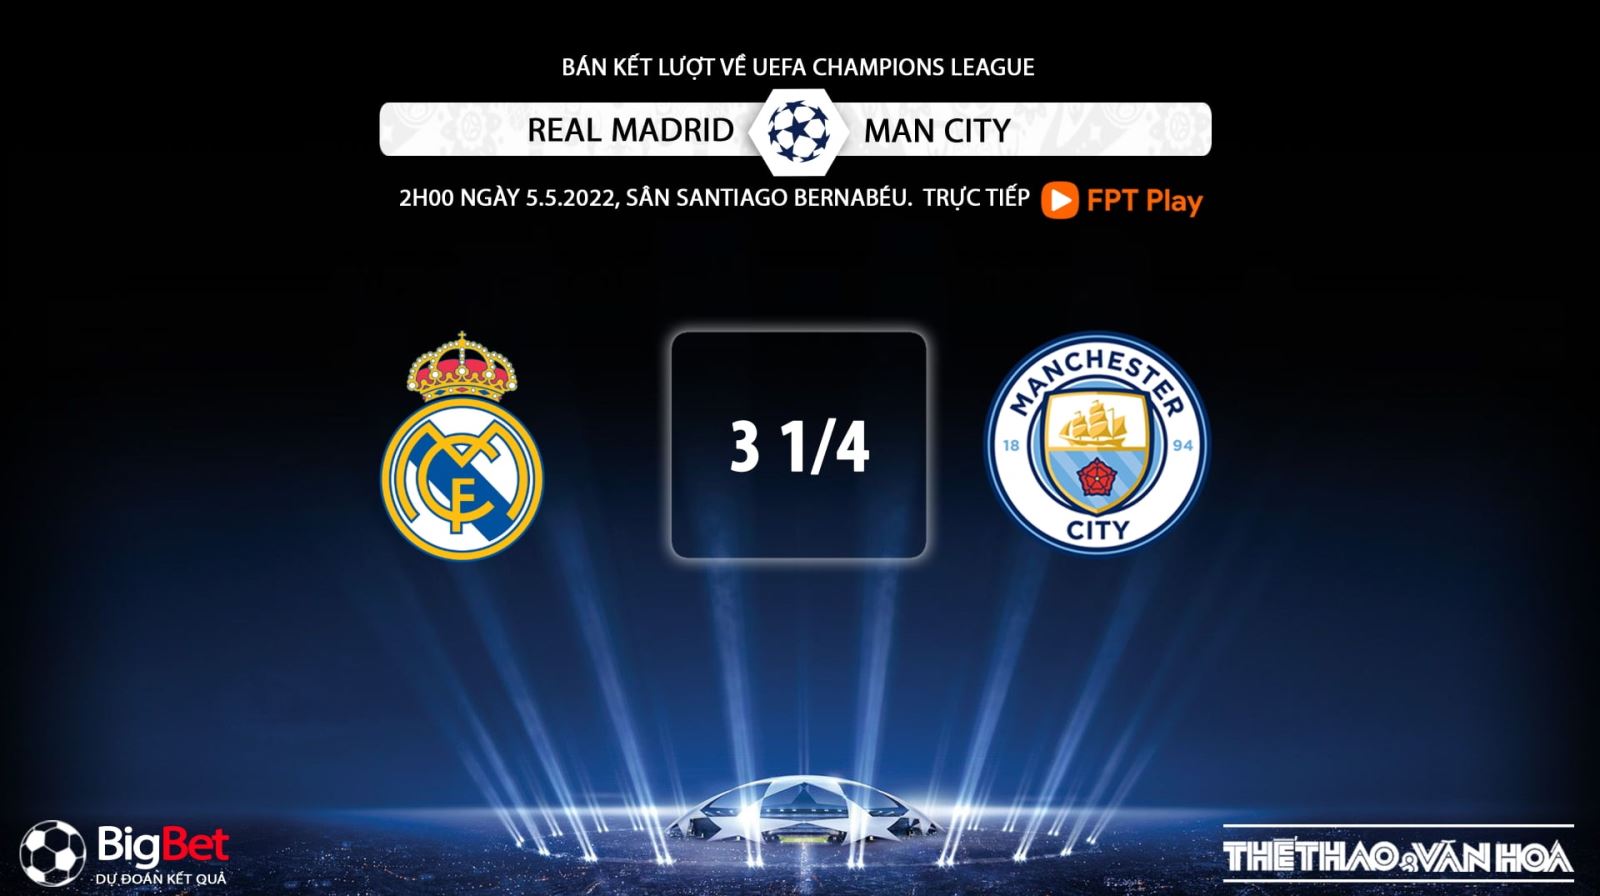 Real Madrid vs Man City, kèo nhà cái, soi kèo Real Madrid vs Man City, nhận định bóng đá, Man City, Real Madrid, keo nha cai, dự đoán bóng đá, Cúp C1, Champions League